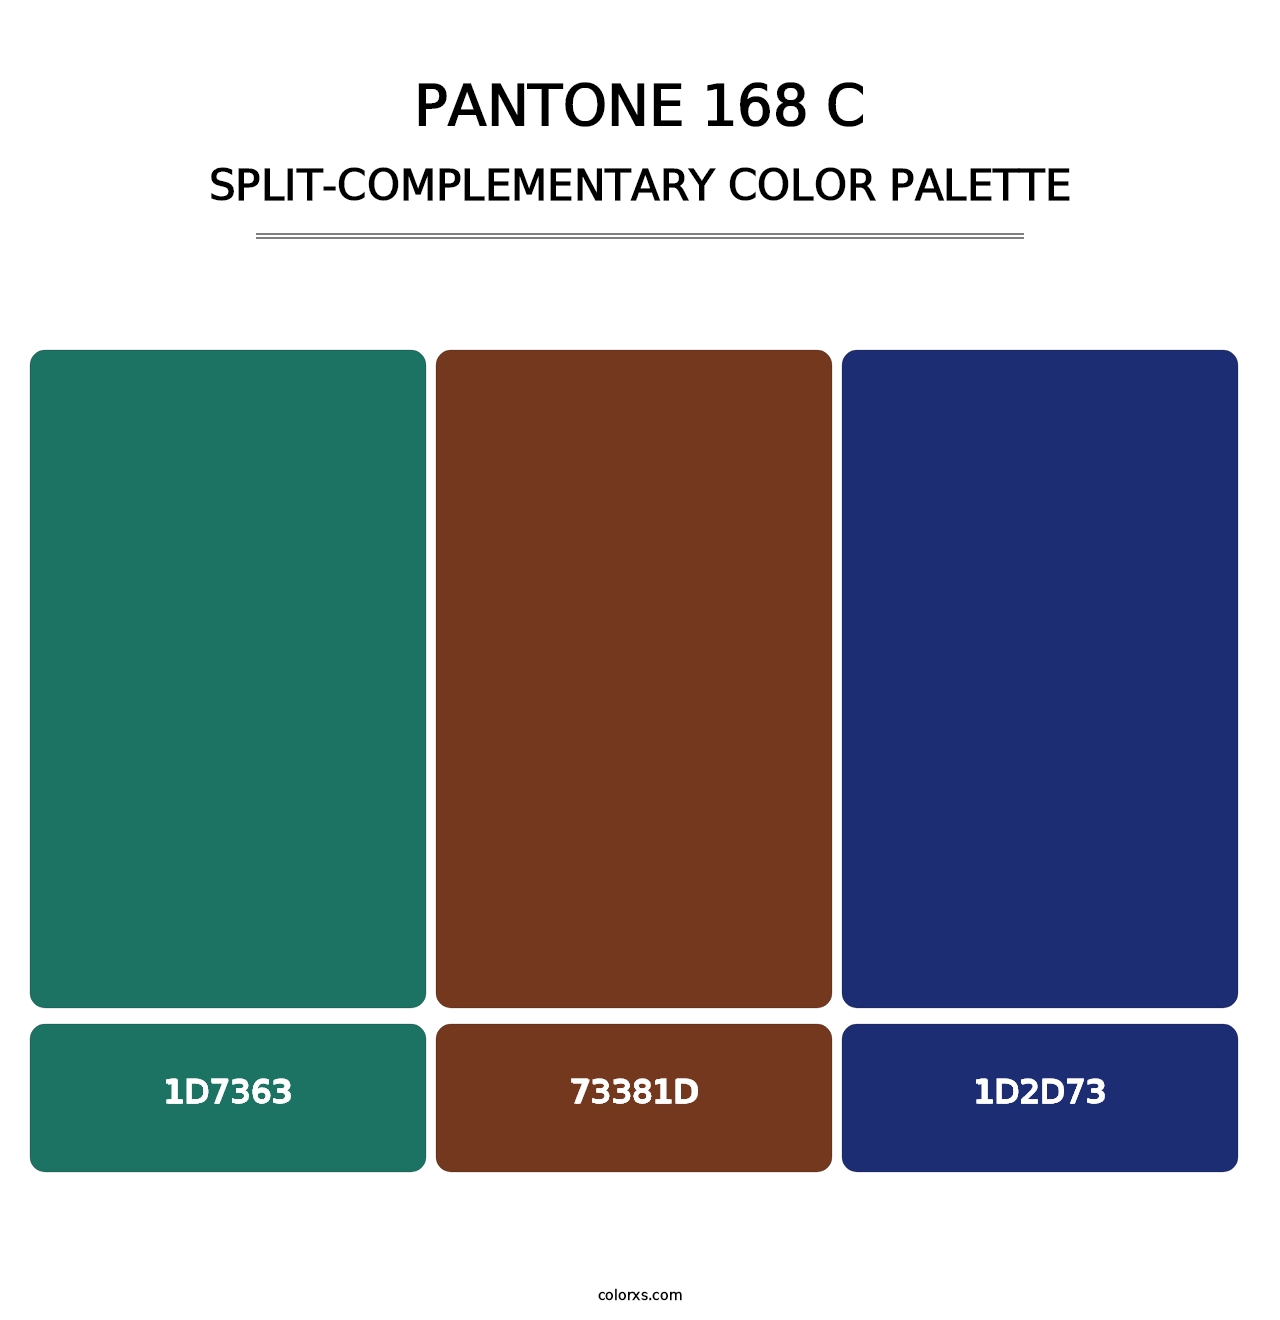 PANTONE 168 C - Split-Complementary Color Palette